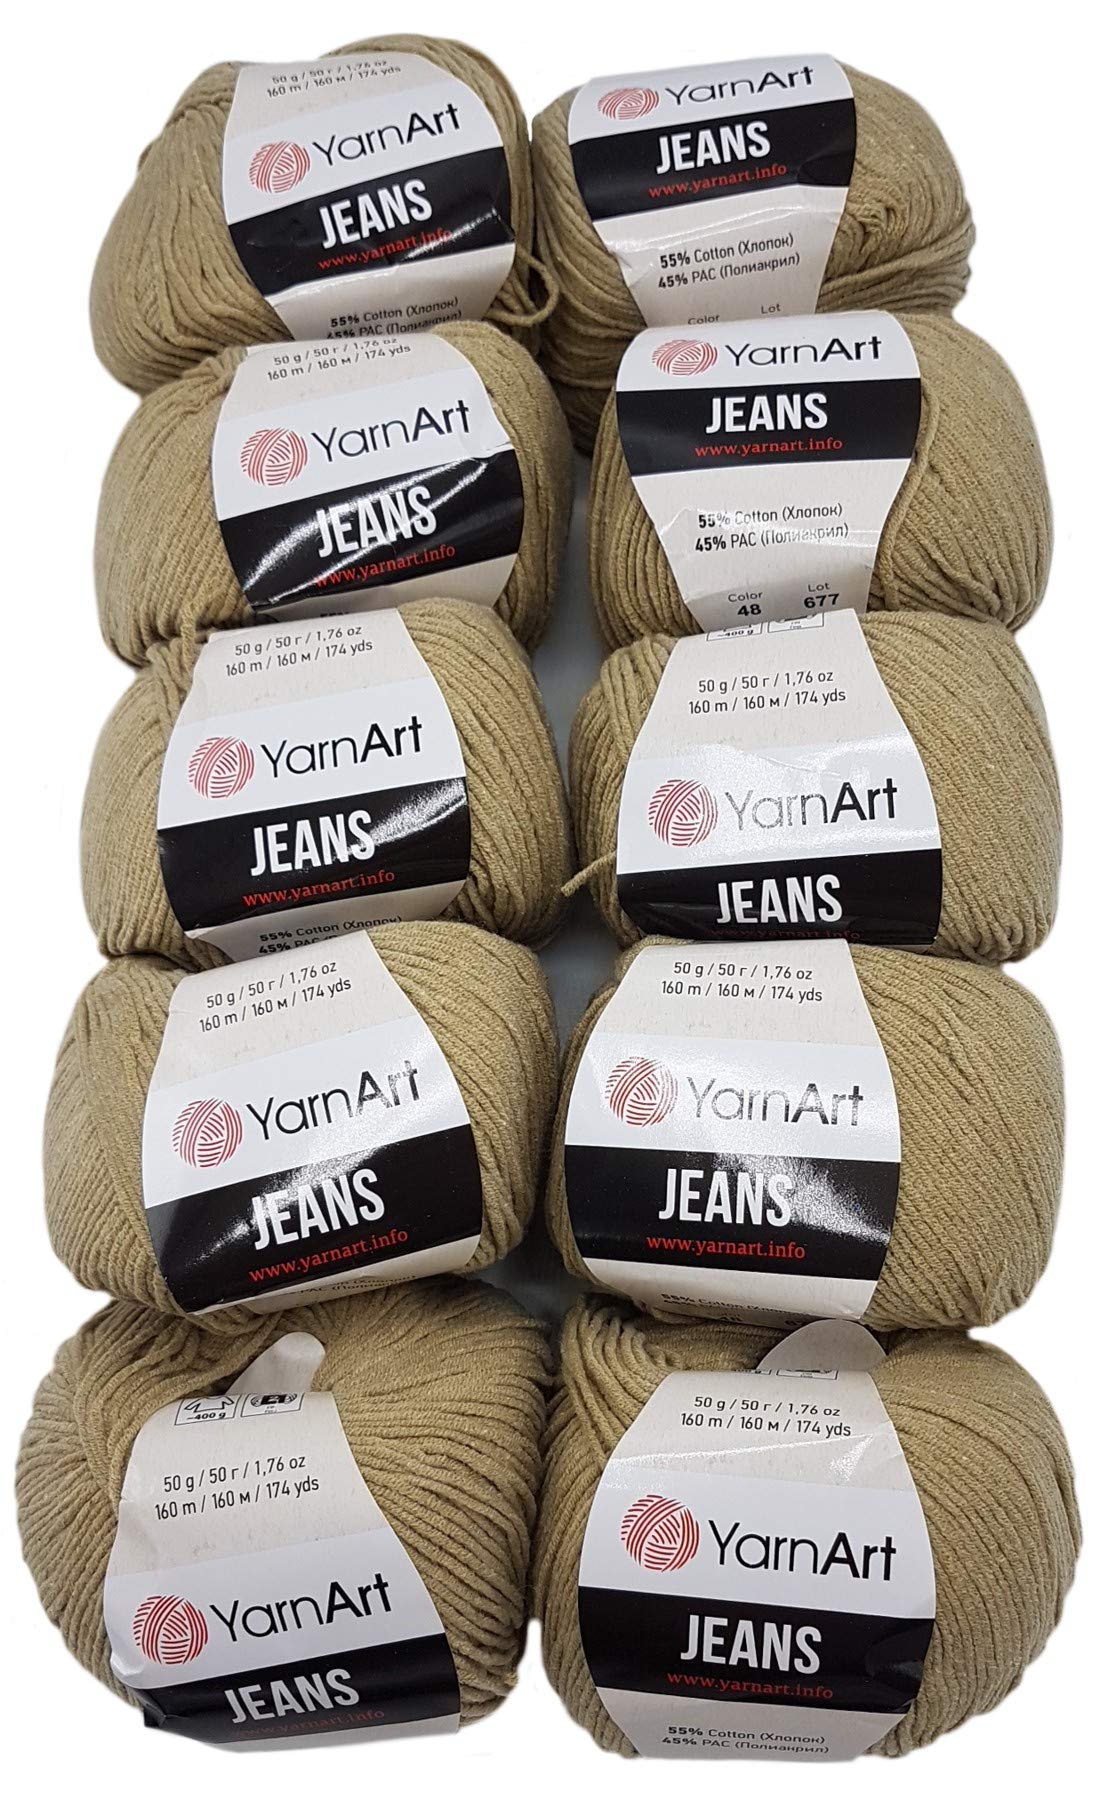 Ilkadim - YarnArt 10 x 50g Strickwolle YarnArt Jeans einfarbig mit 55% Baumwolle, 500 Gramm Wolle einfarbig (Sand 48)